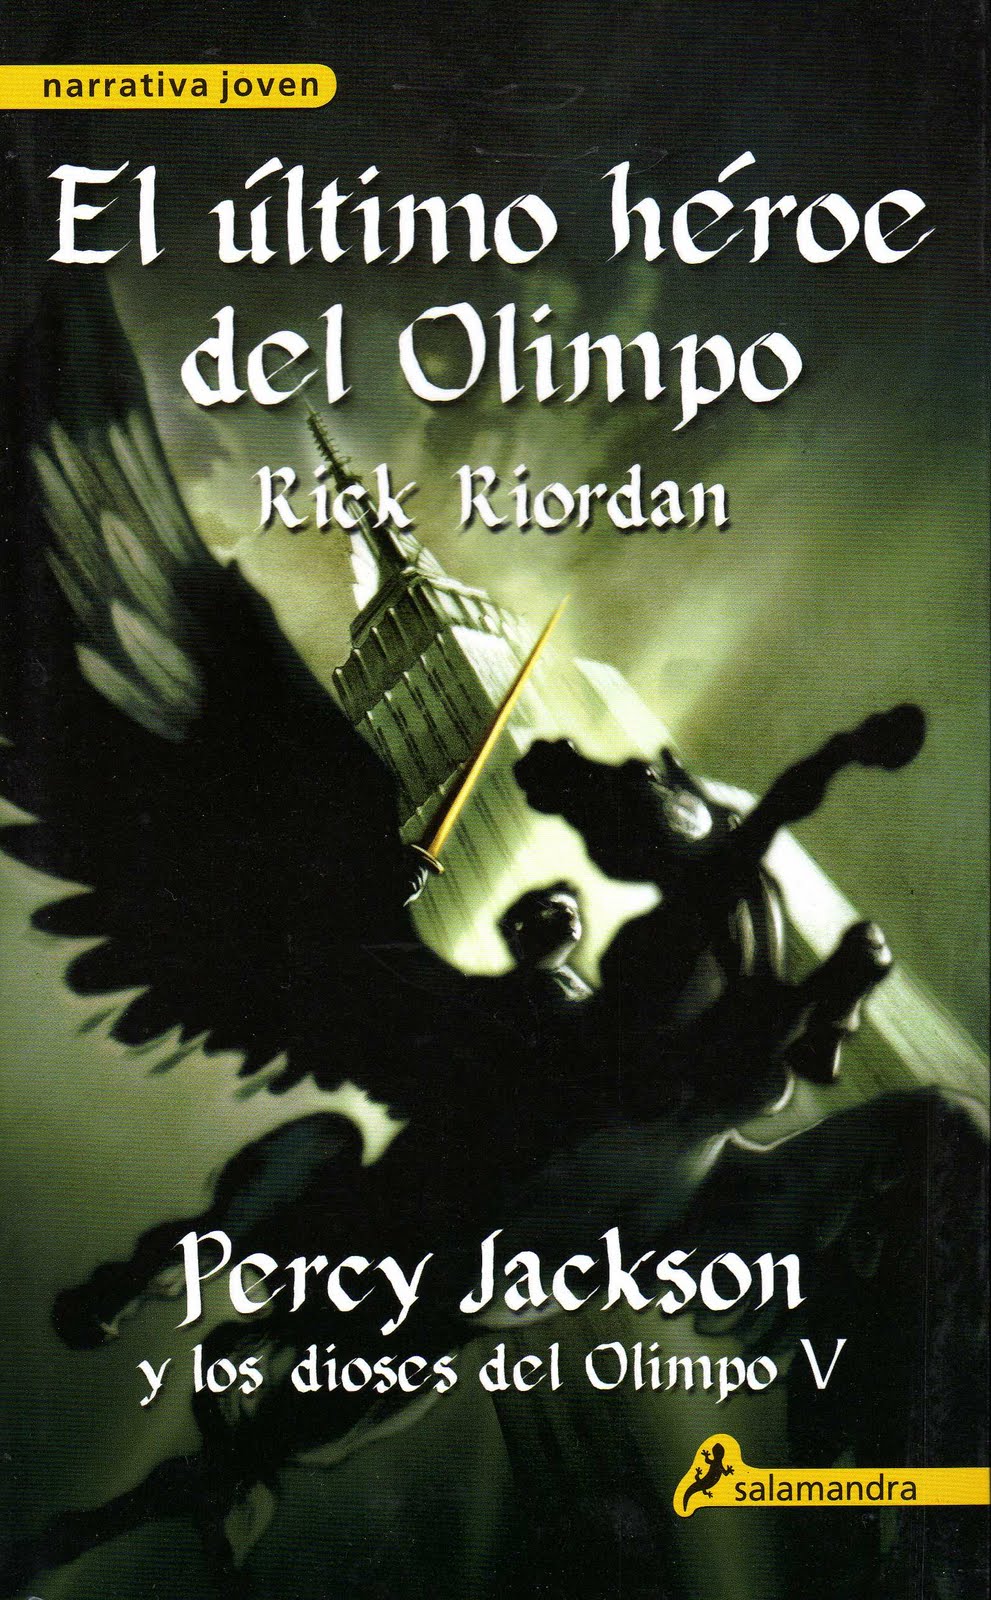 Libro de audio Percy Jackson y los dioses del Olimpo: El último héroe del Olimpo [5] – Rick Riordan